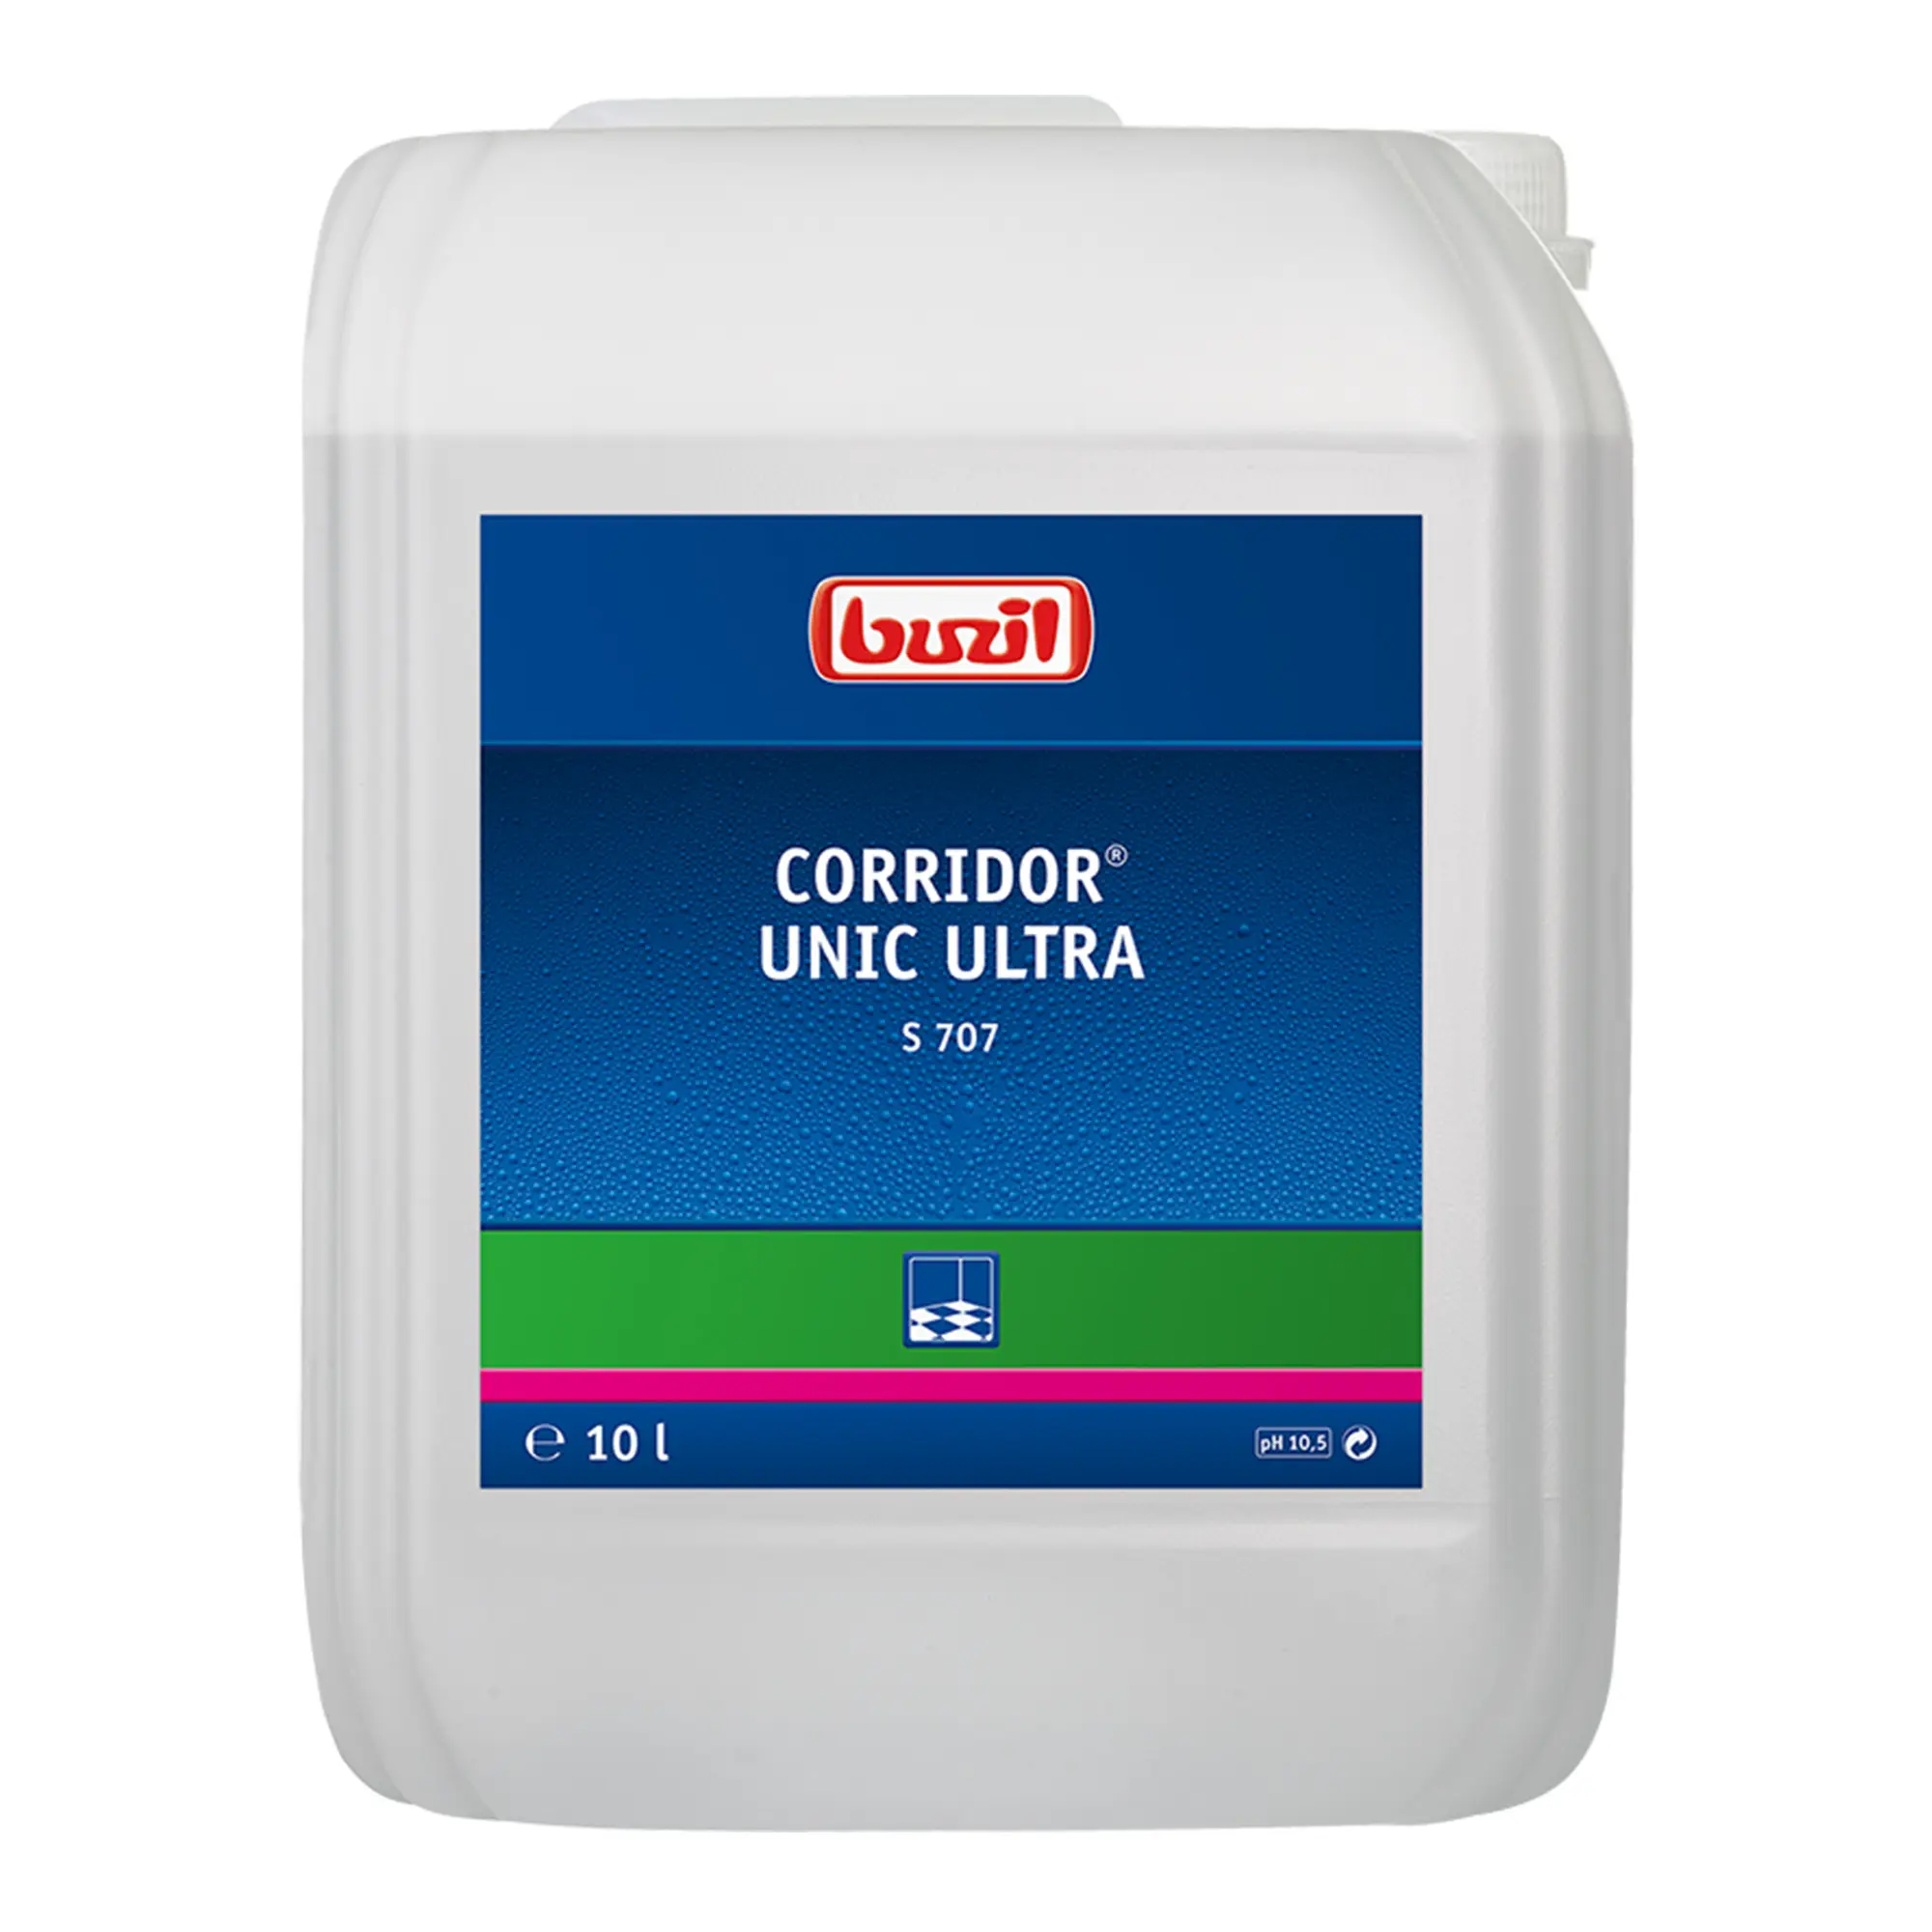 Buzil Corridor Unic Ultra S707 Universalgrundreiniger 10 Liter Kanister S707-0010RA_1